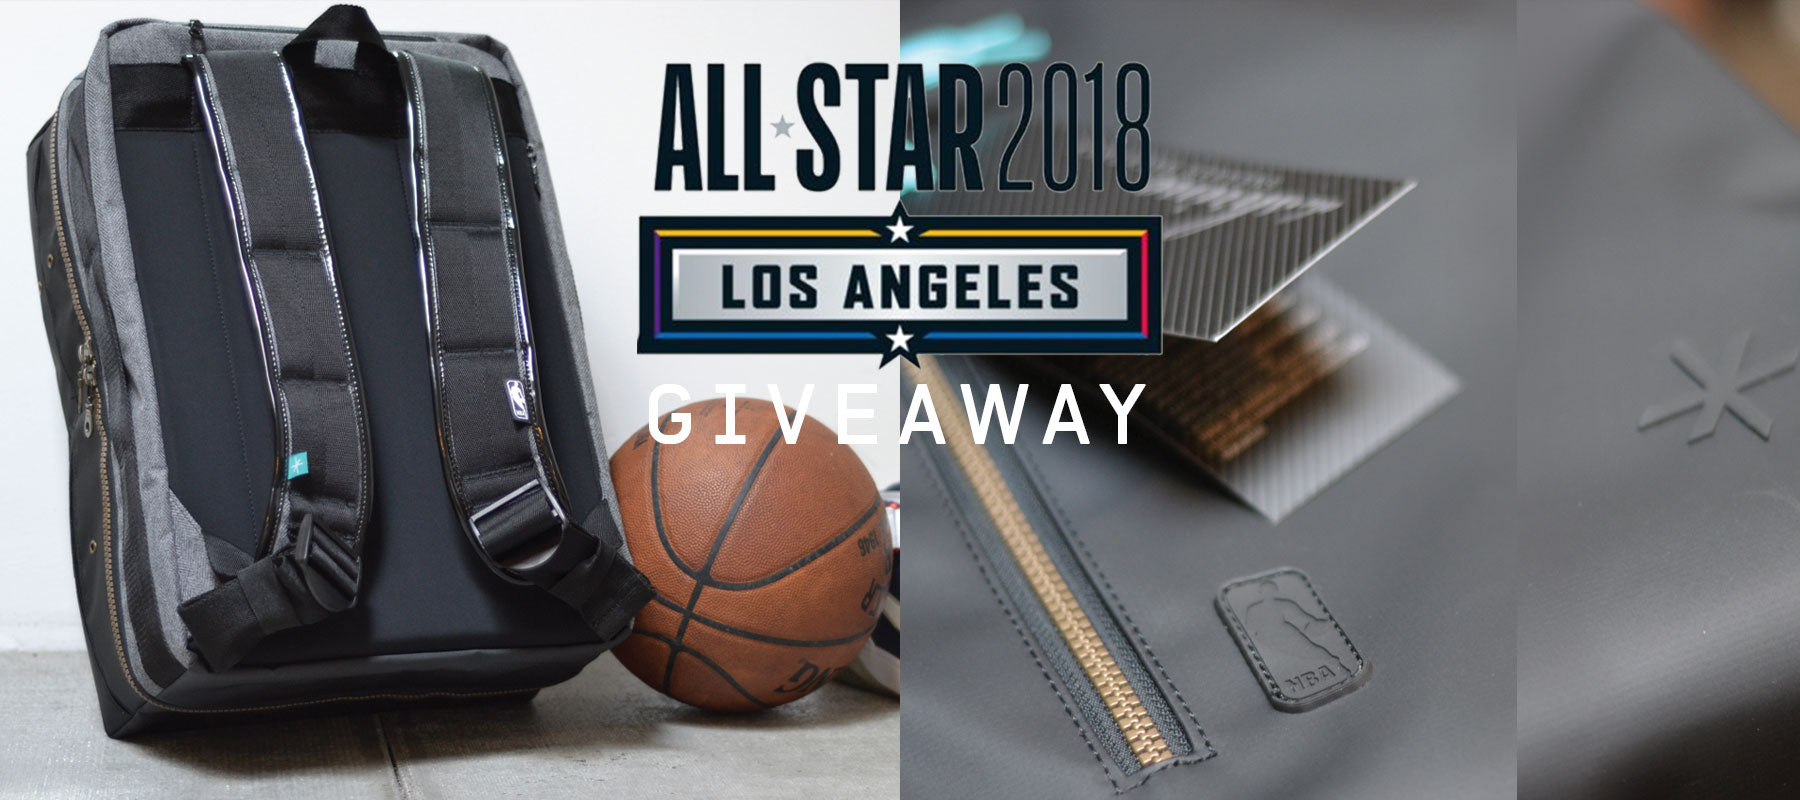 OG Weekender Backpack INSTAGRAM Giveaway for 2018 All Star Game